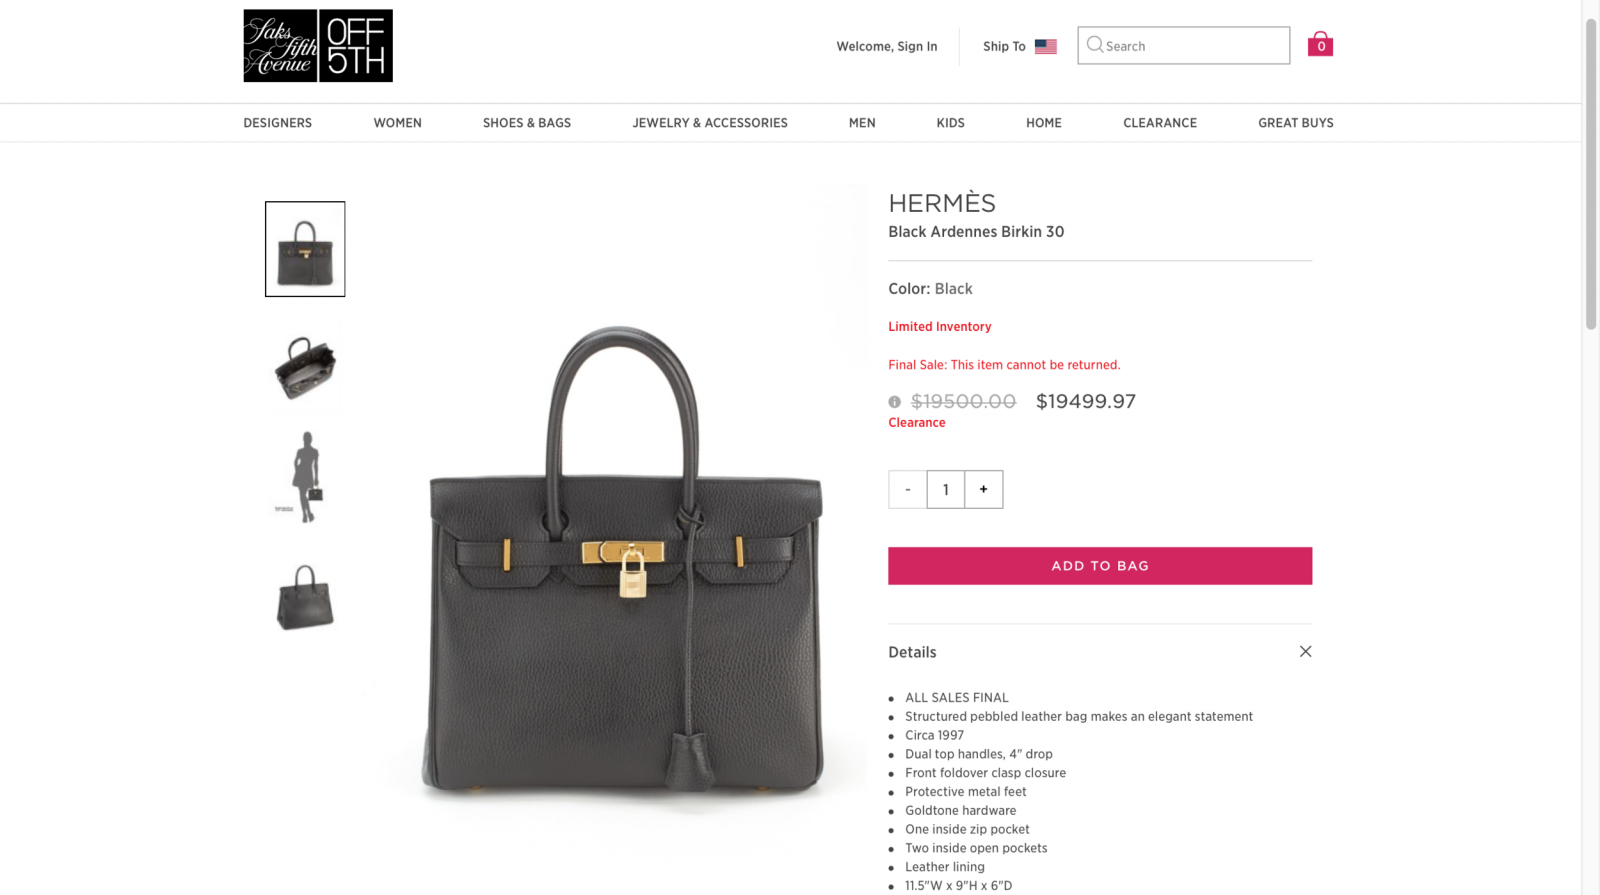 Hermès Birkin So Black second hand prices